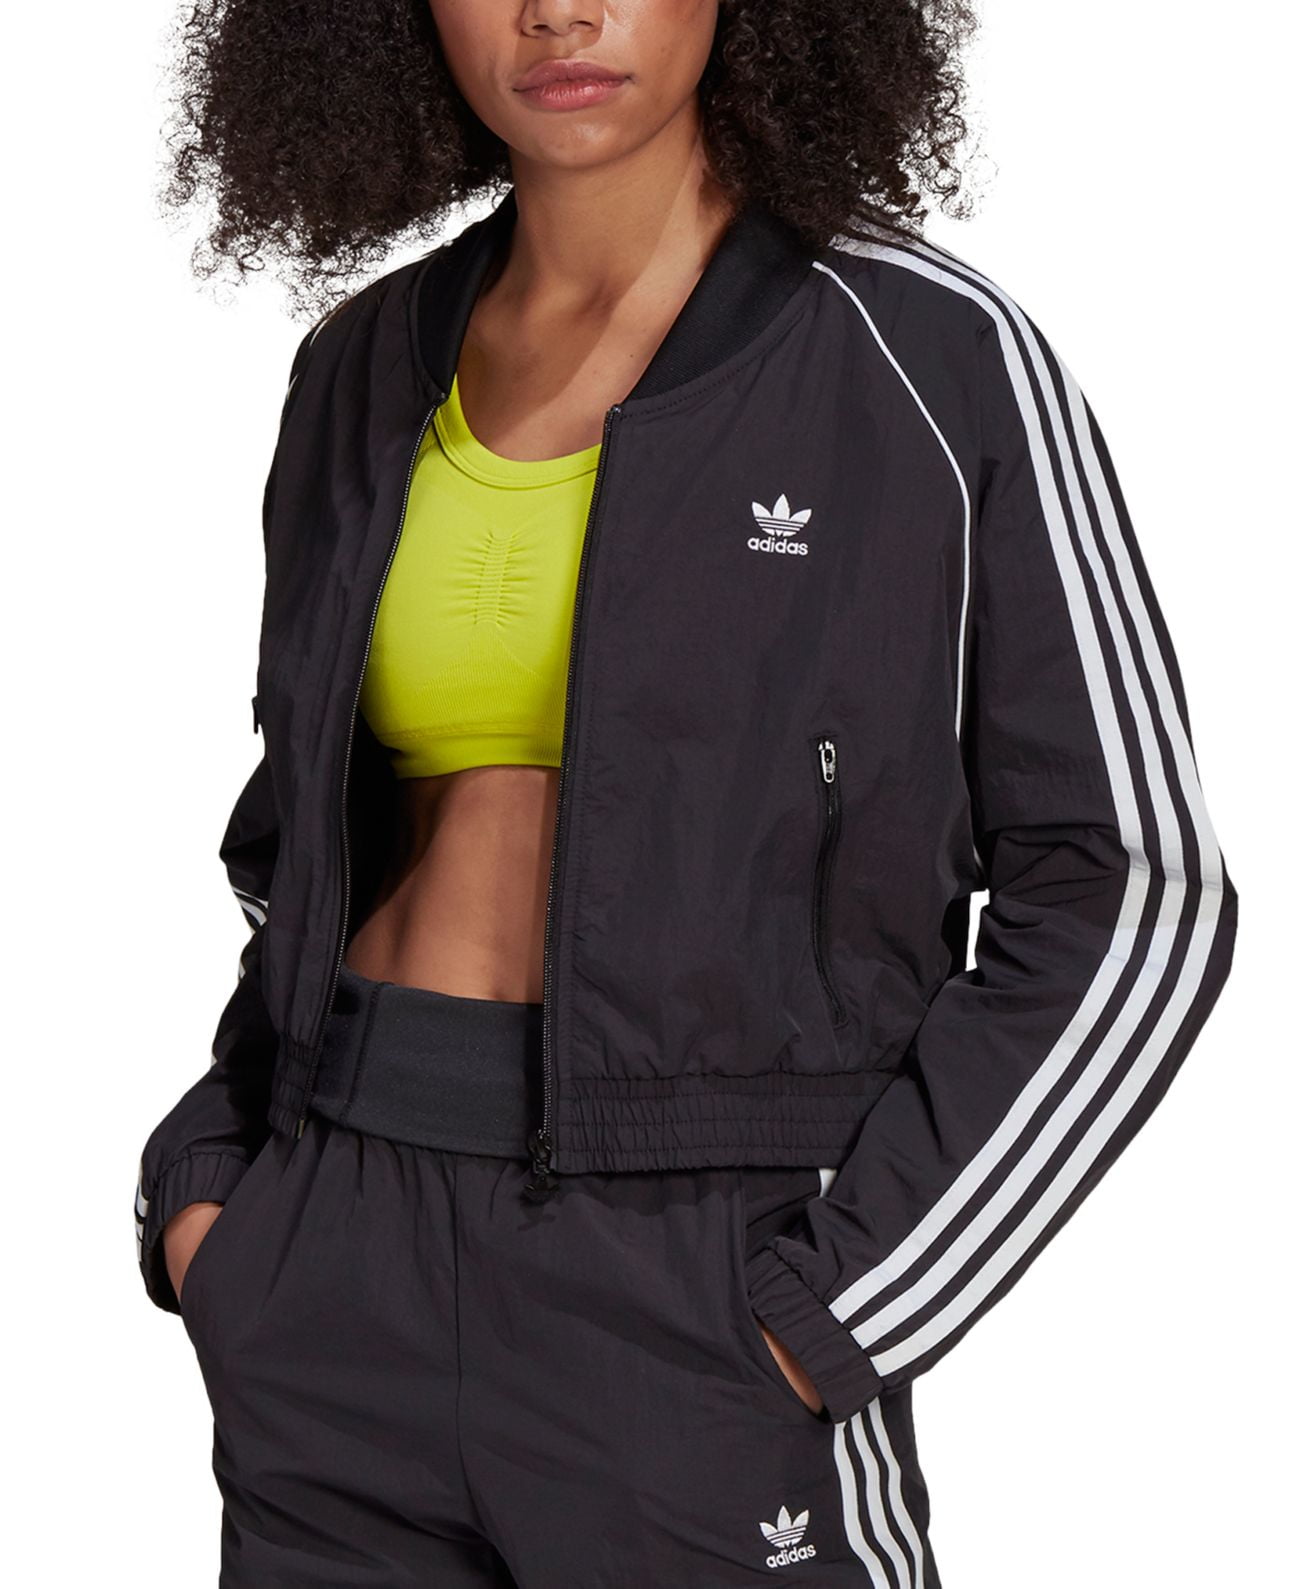 baas van mening zijn Fotoelektrisch Adidas Originals Women's Cropped Track Jacket, Black, Medium - Walmart.com